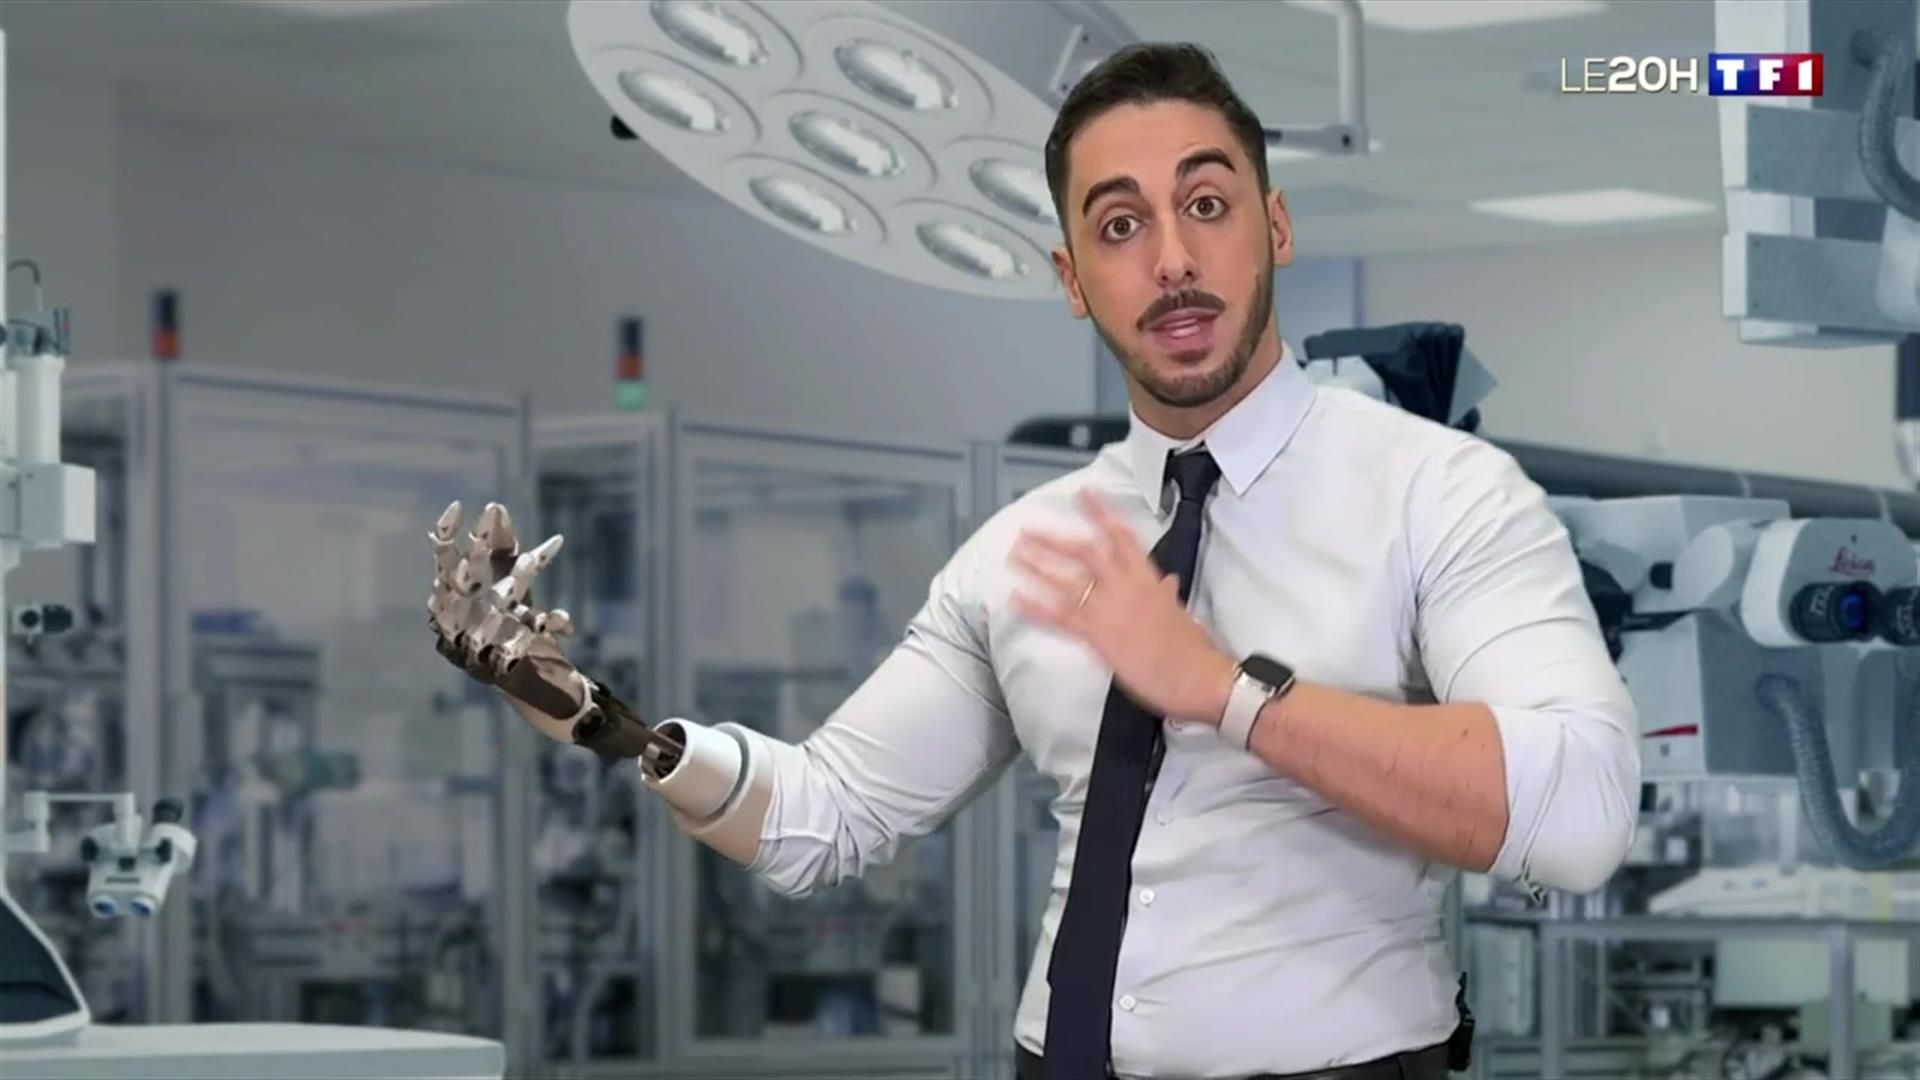 REGARDEZ - Découvrez, en 3D, à quoi ressembleront les prothèses du futur